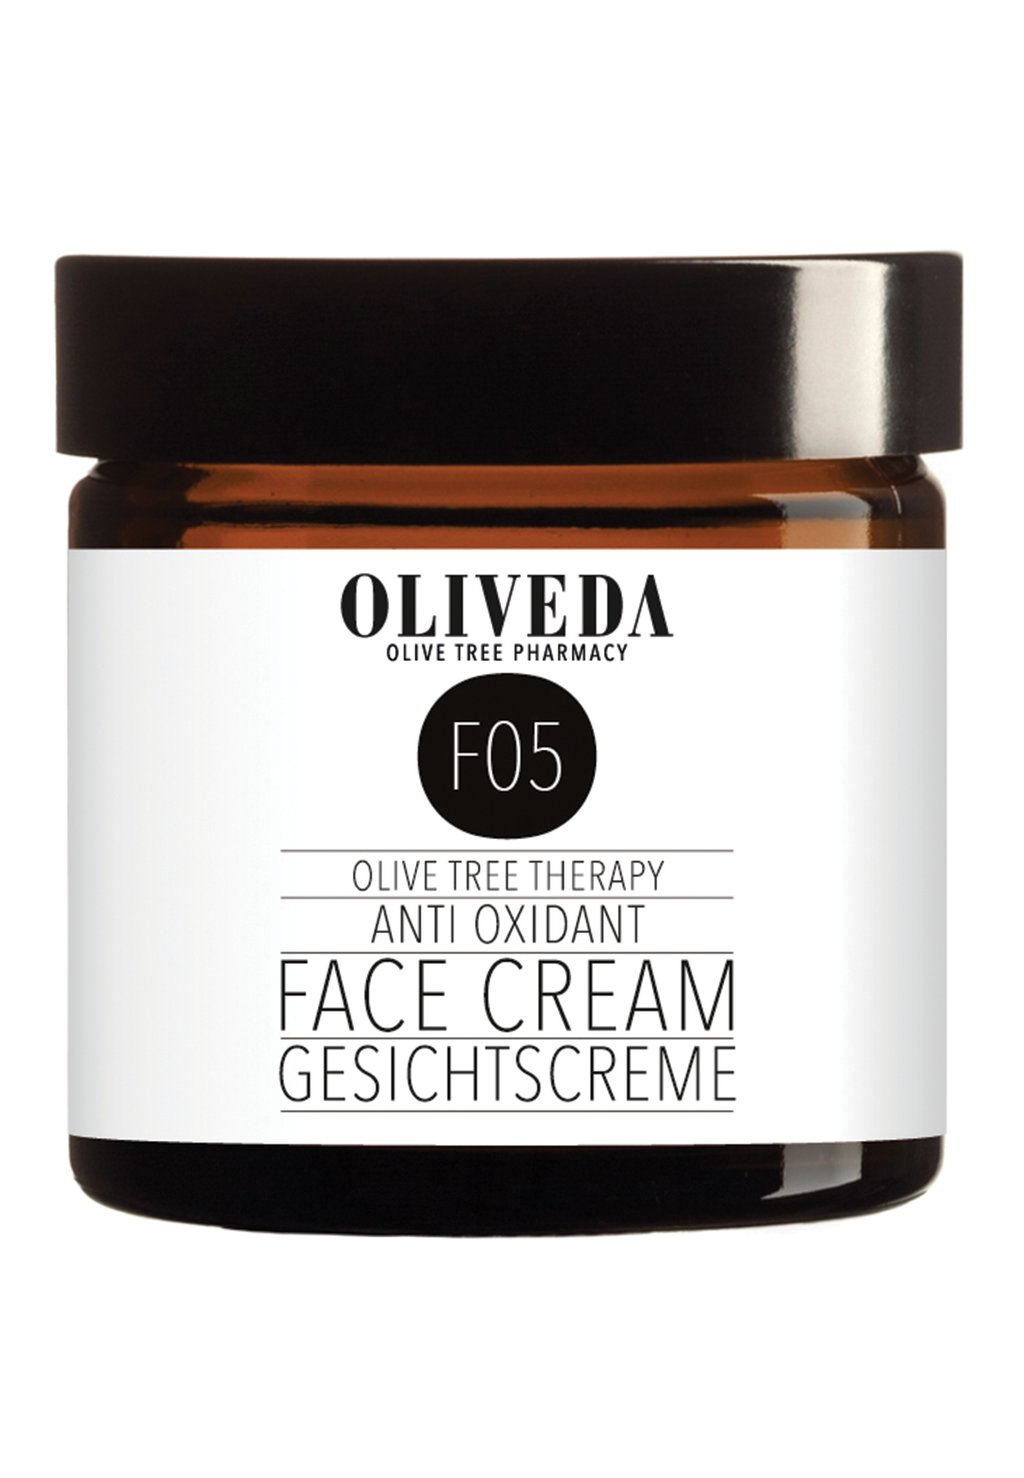 цена Дневной крем Face Cream Anti Oxidant Oliveda